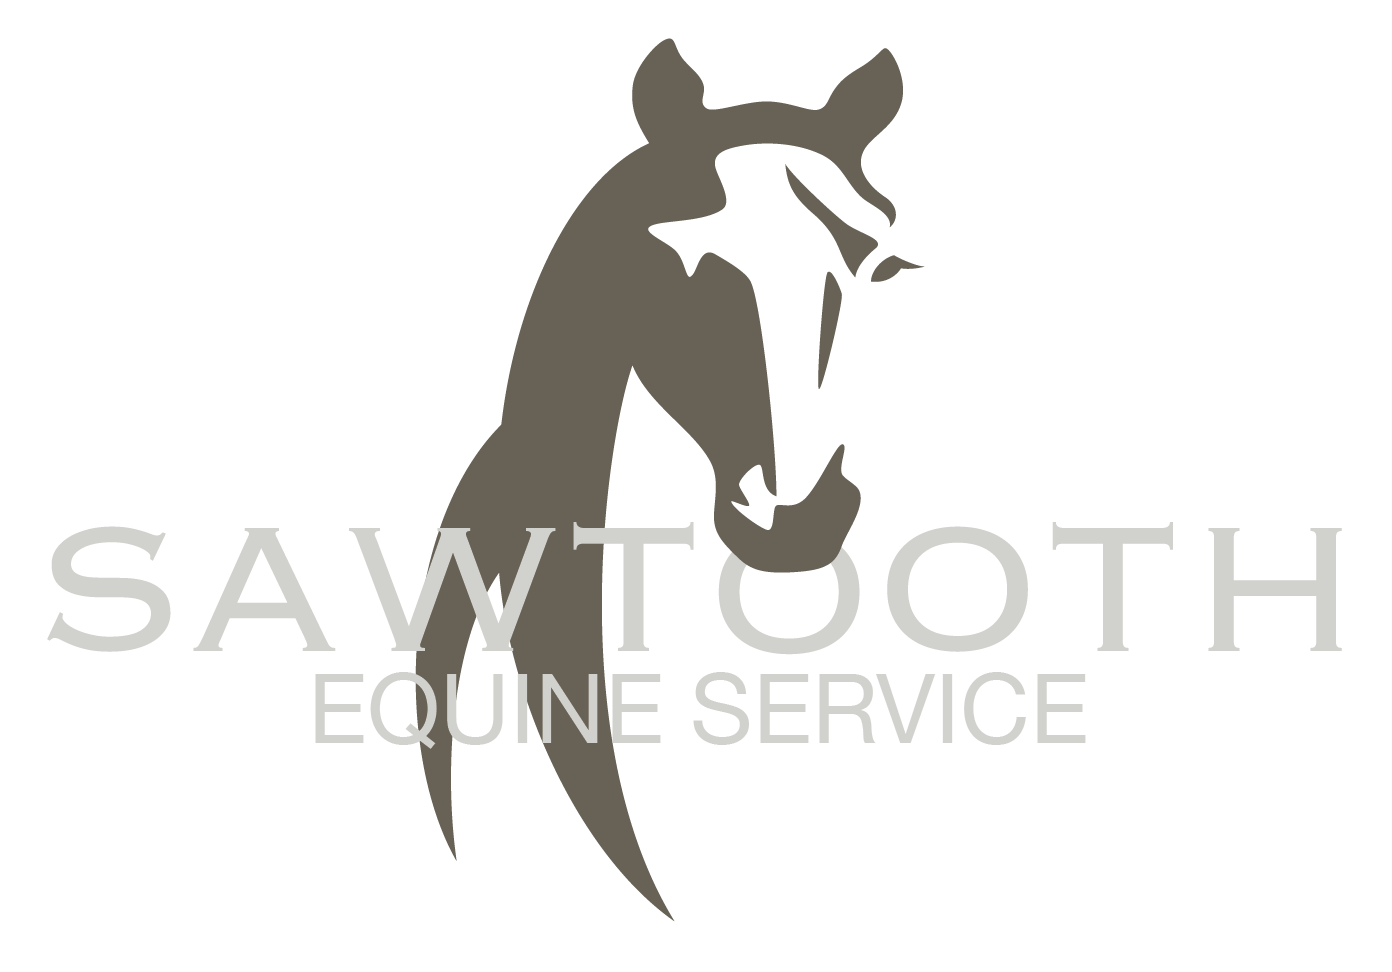 Sawtooth Equine Service